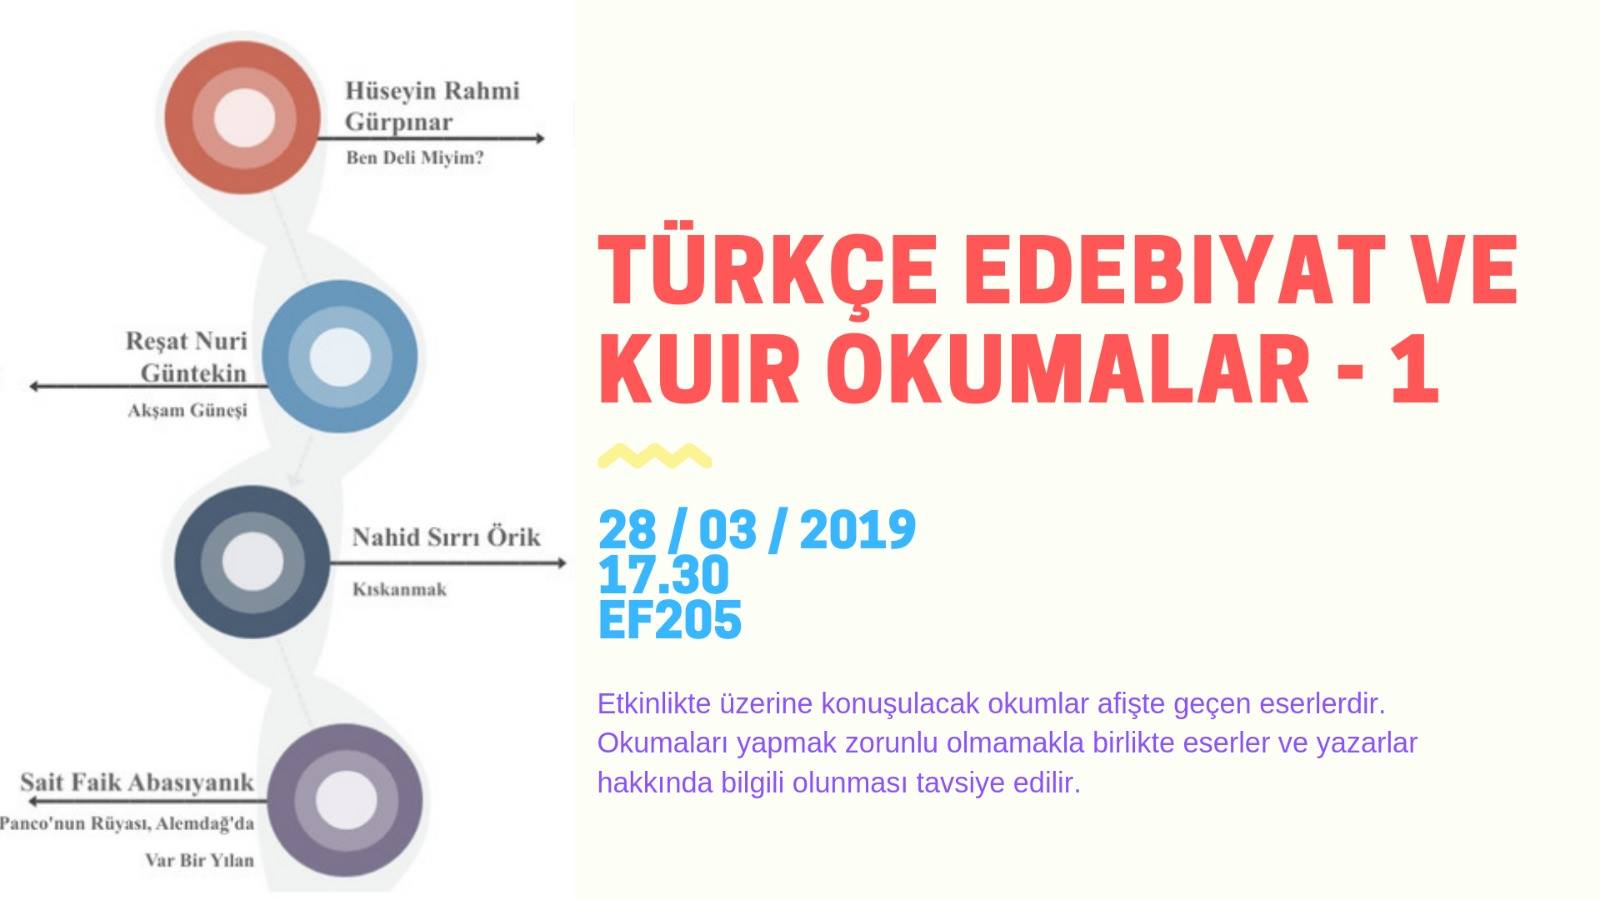 BÜLGBTİ+’dan “Türkçe Edebiyat ve Kuir Okumalar” | Kaos GL - LGBTİ+ Haber Portalı Haber